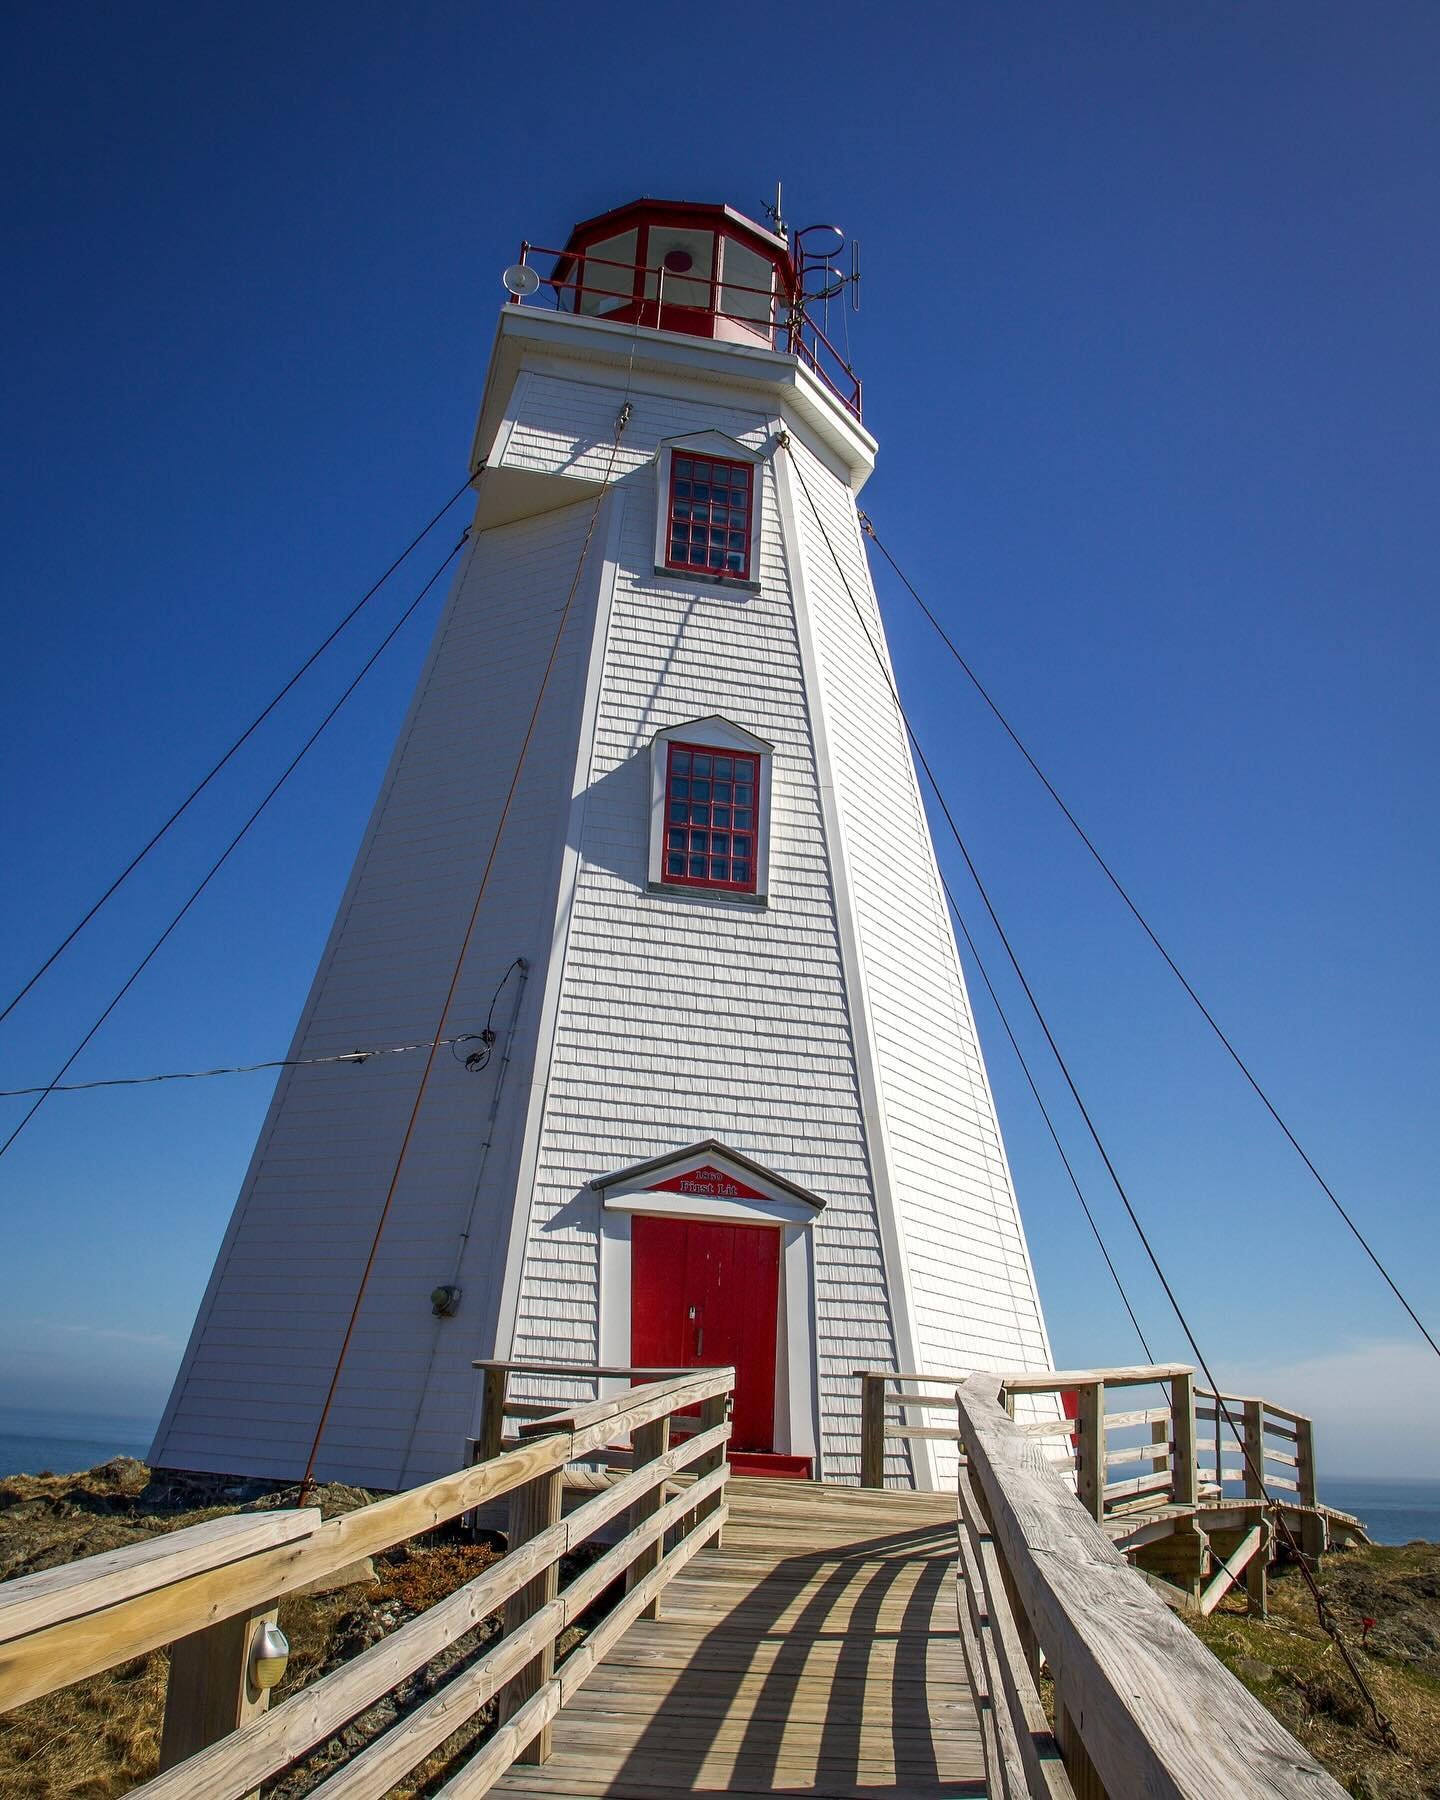 Get a sneak peek at Swallowtail Lighthouse 2.0! #maritimesmaven